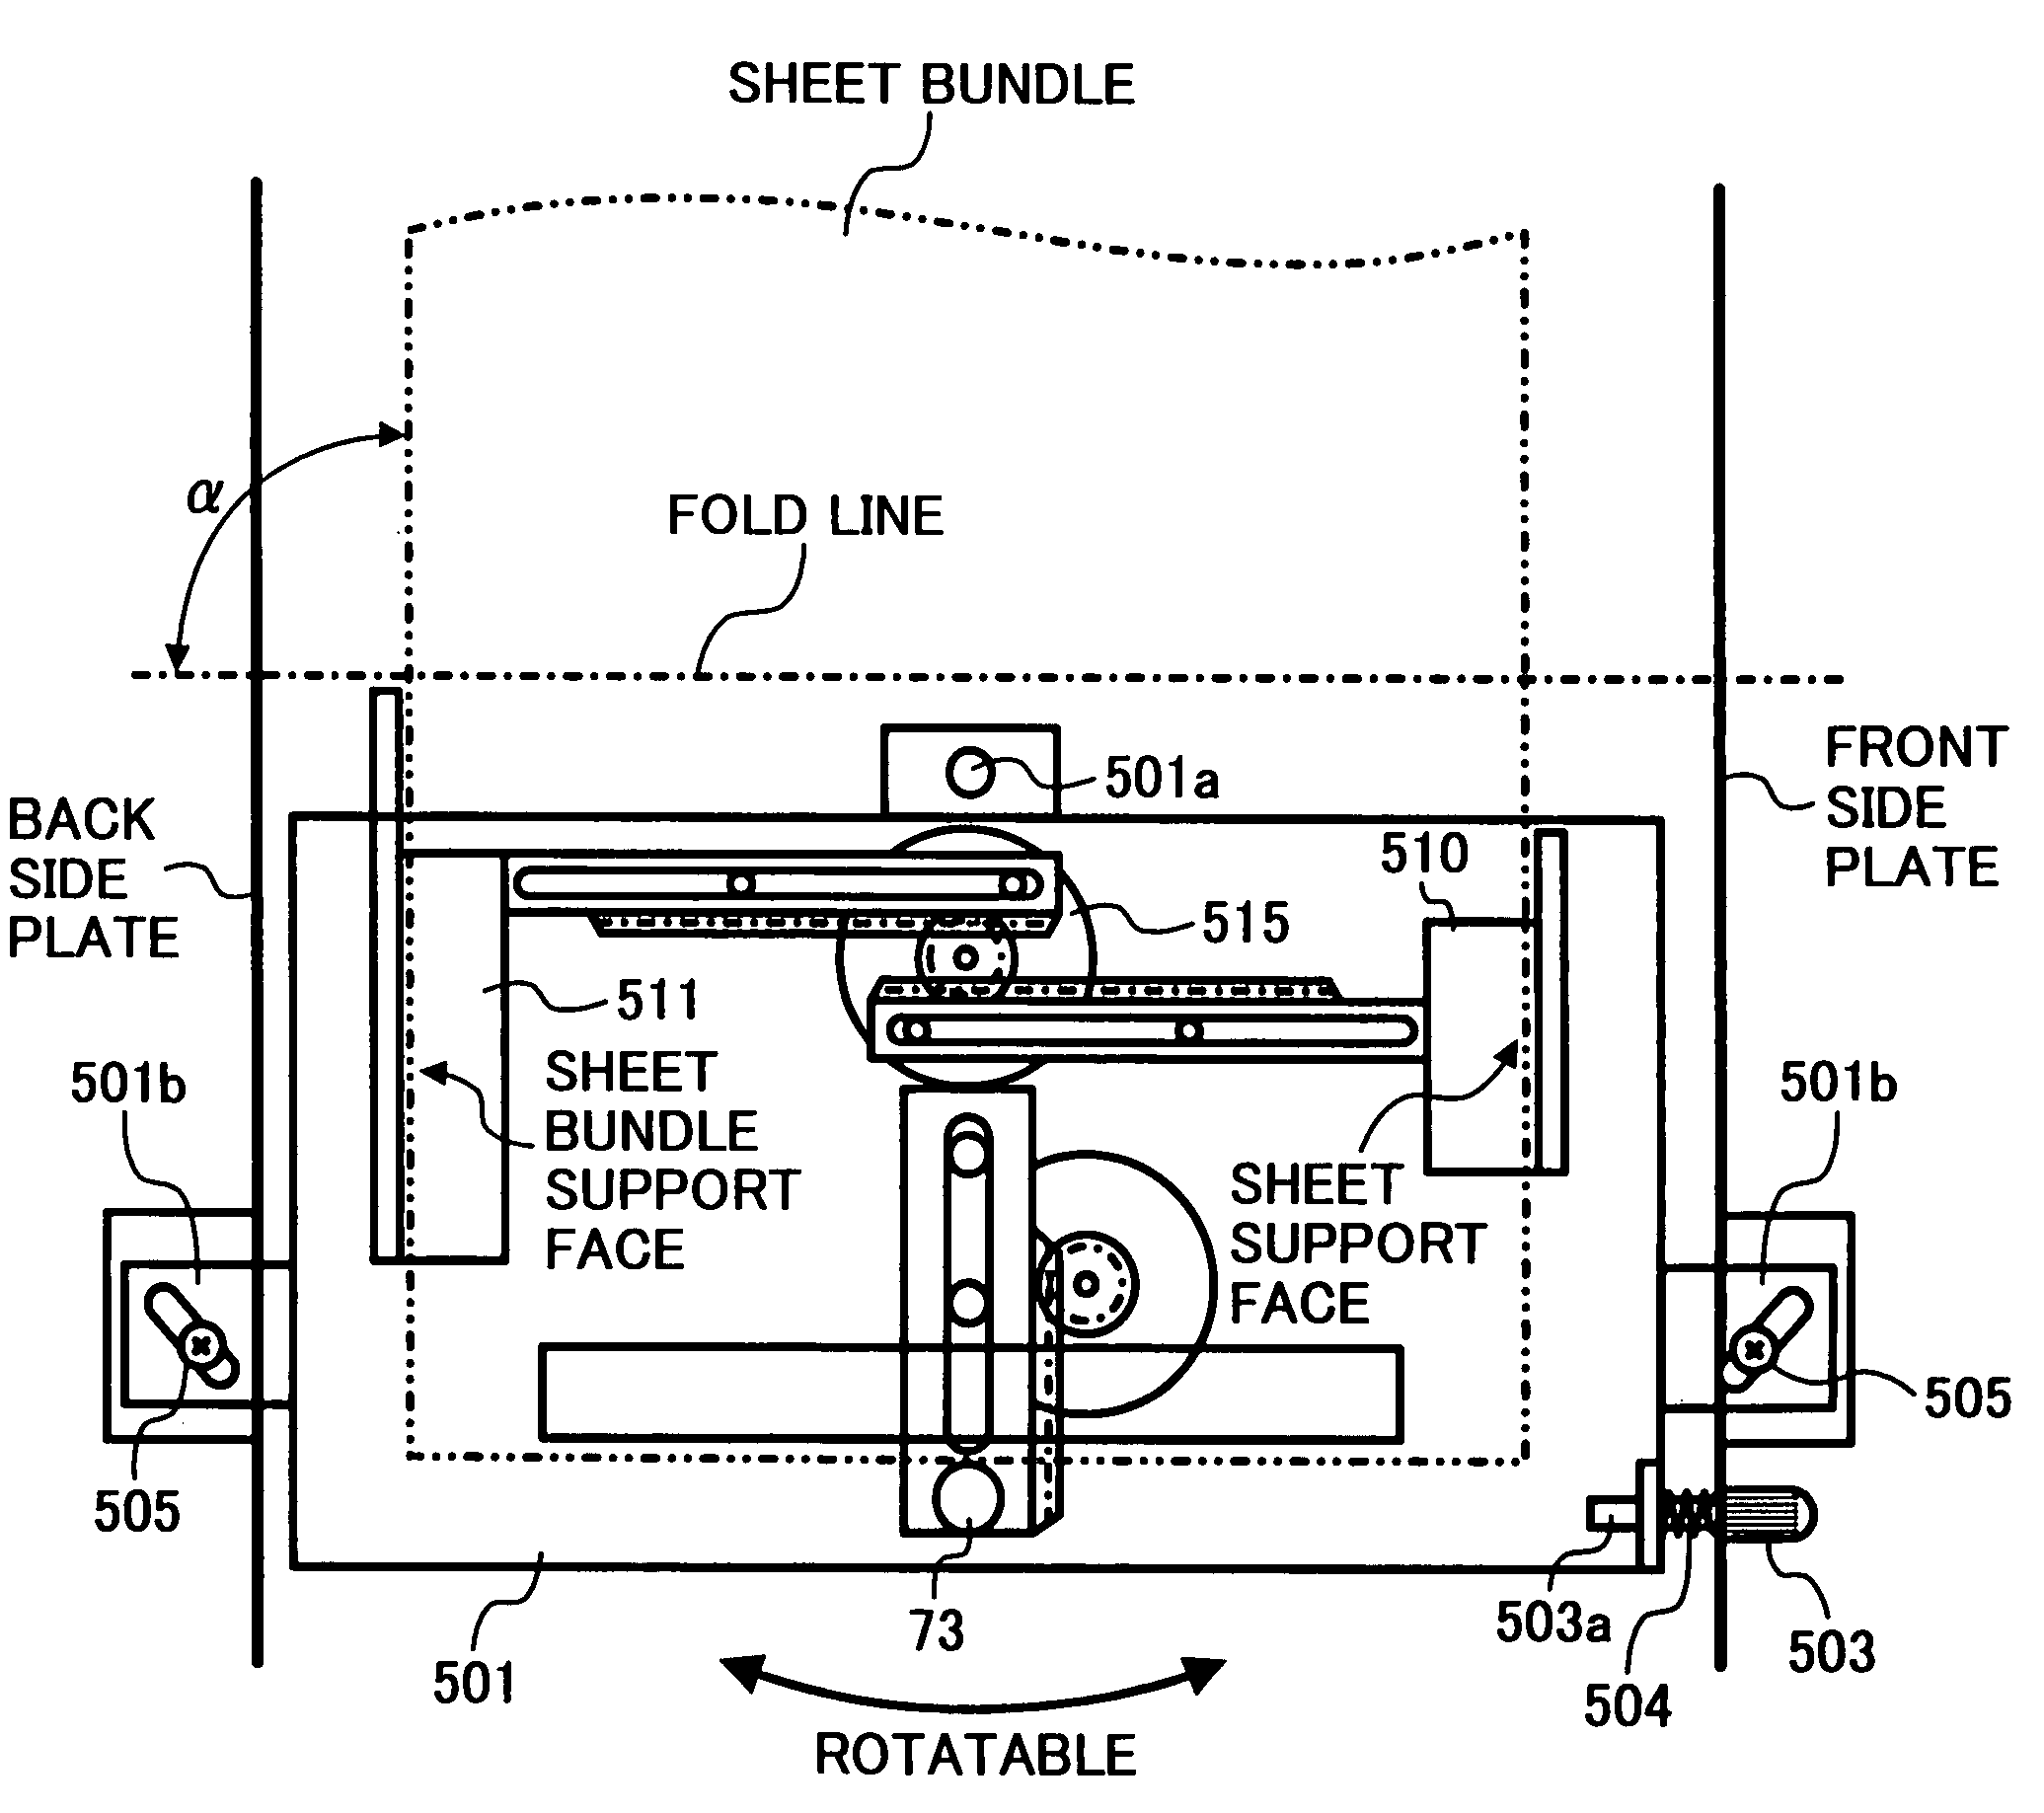 Sheet folding apparatus, sheet processing apparatus and image forming apparatus